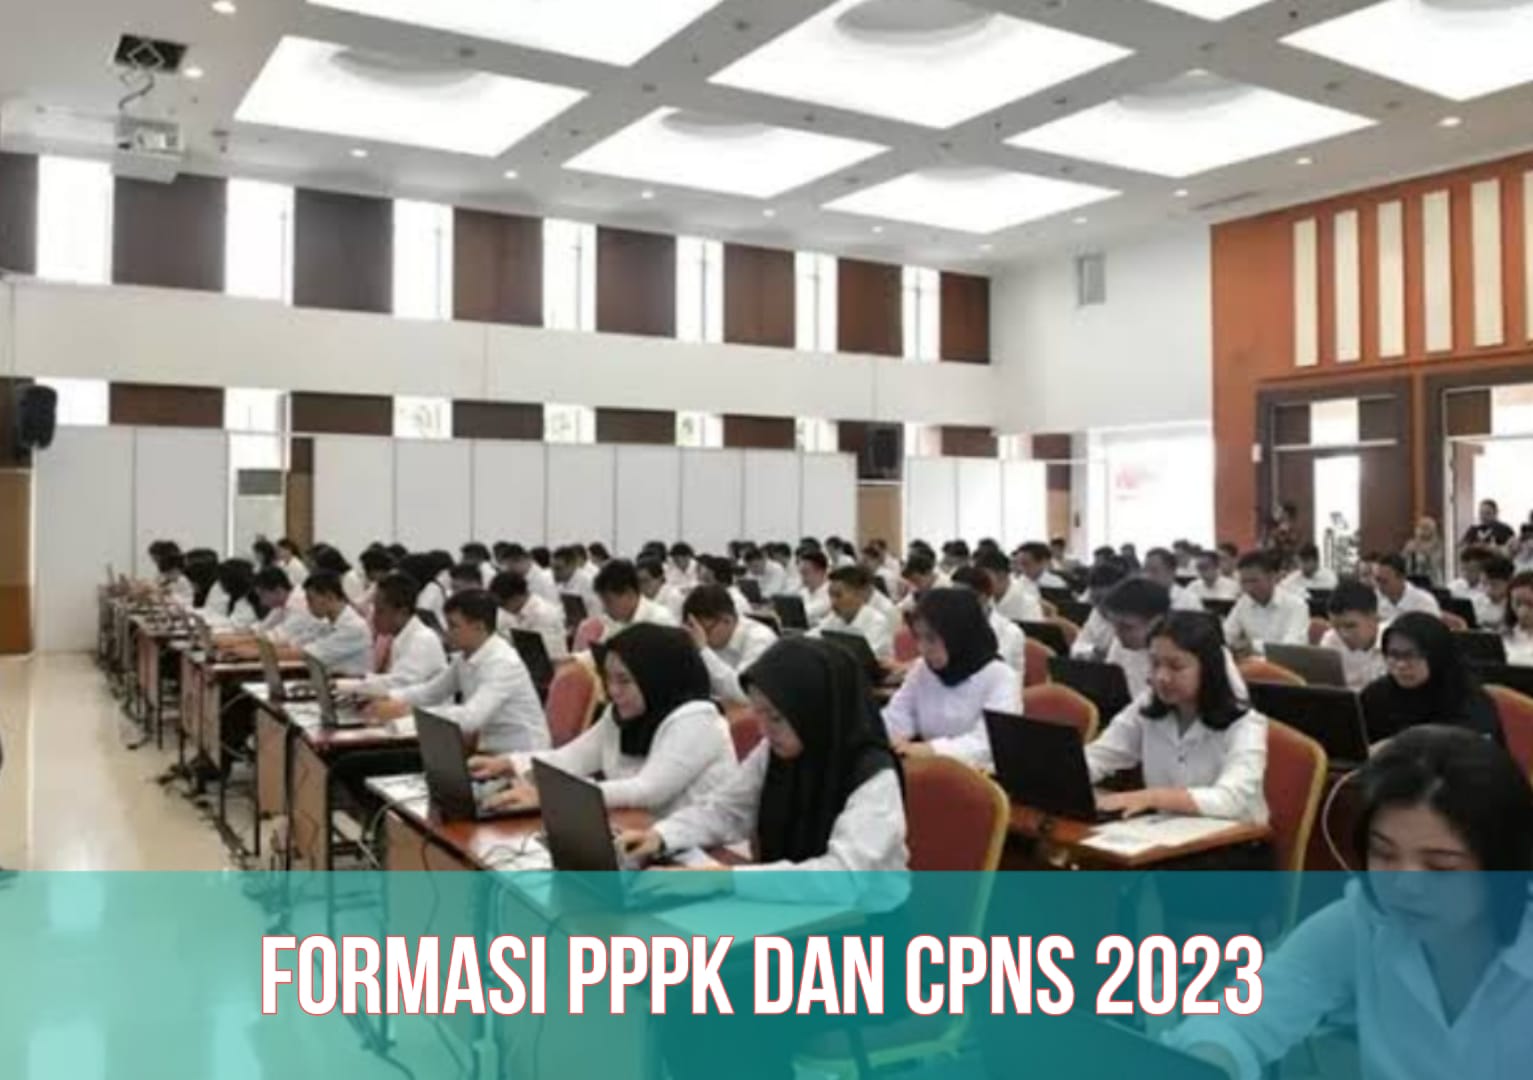 CPNS dan PPPK 2023 Dibuka 17 September, Cek Formasi yang Dibuka, Beserta Jadwal Lengkapnya